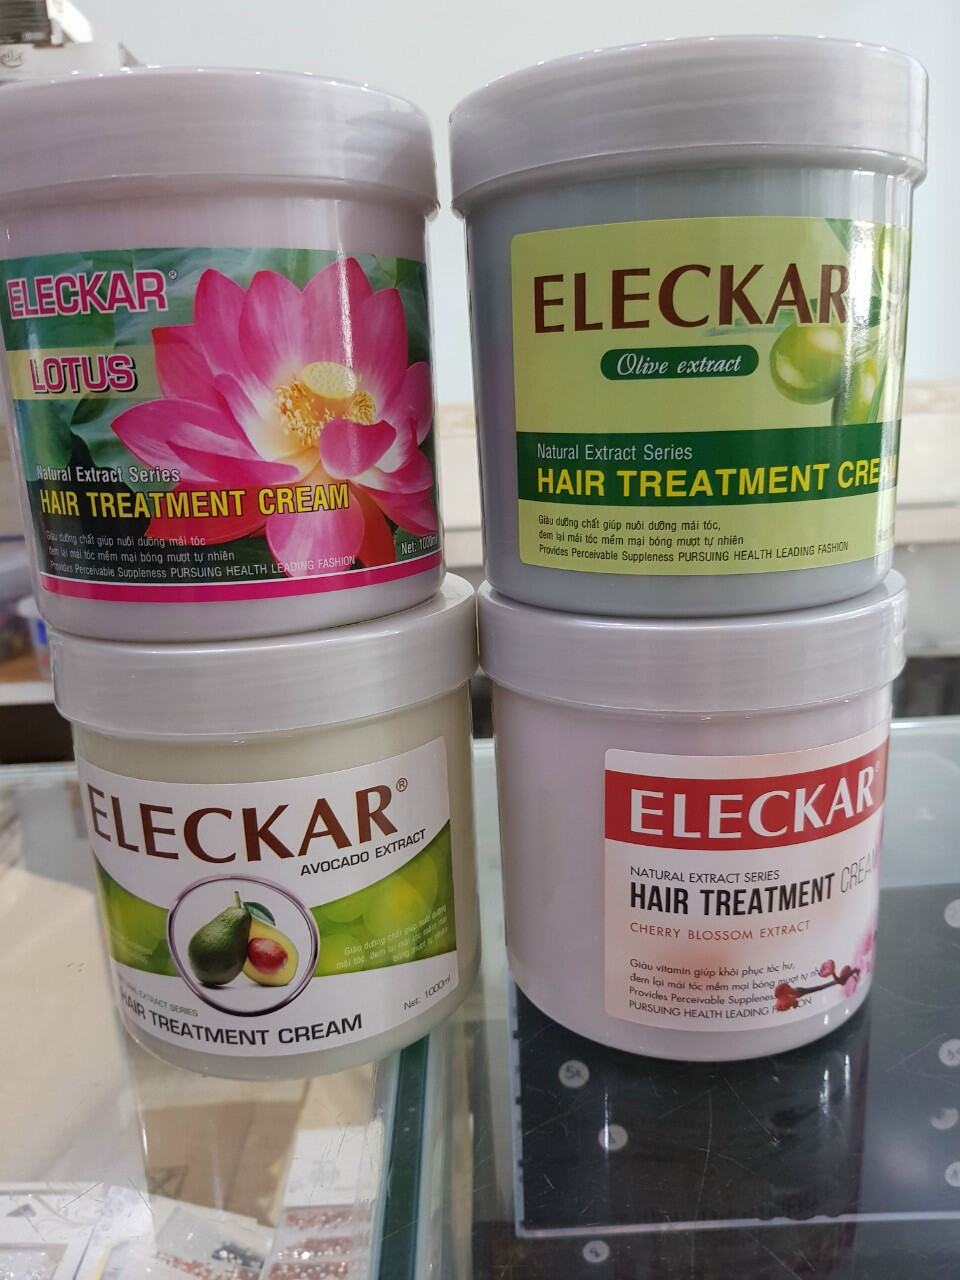 Thuốc nhuộm tóc Eleckar là một sản phẩm đáng tin cậy để bạn có được mái tóc đẹp và bền màu. Với công thức đầu tiên tại Việt Nam, sản phẩm không những tôn lên vẻ đẹp của tóc mà còn bảo vệ tóc khỏi hư tổn. Hãy xem ngay ảnh sản phẩm để cảm nhận hiệu quả thần kỳ của thuốc nhuộm tóc Eleckar nhé!